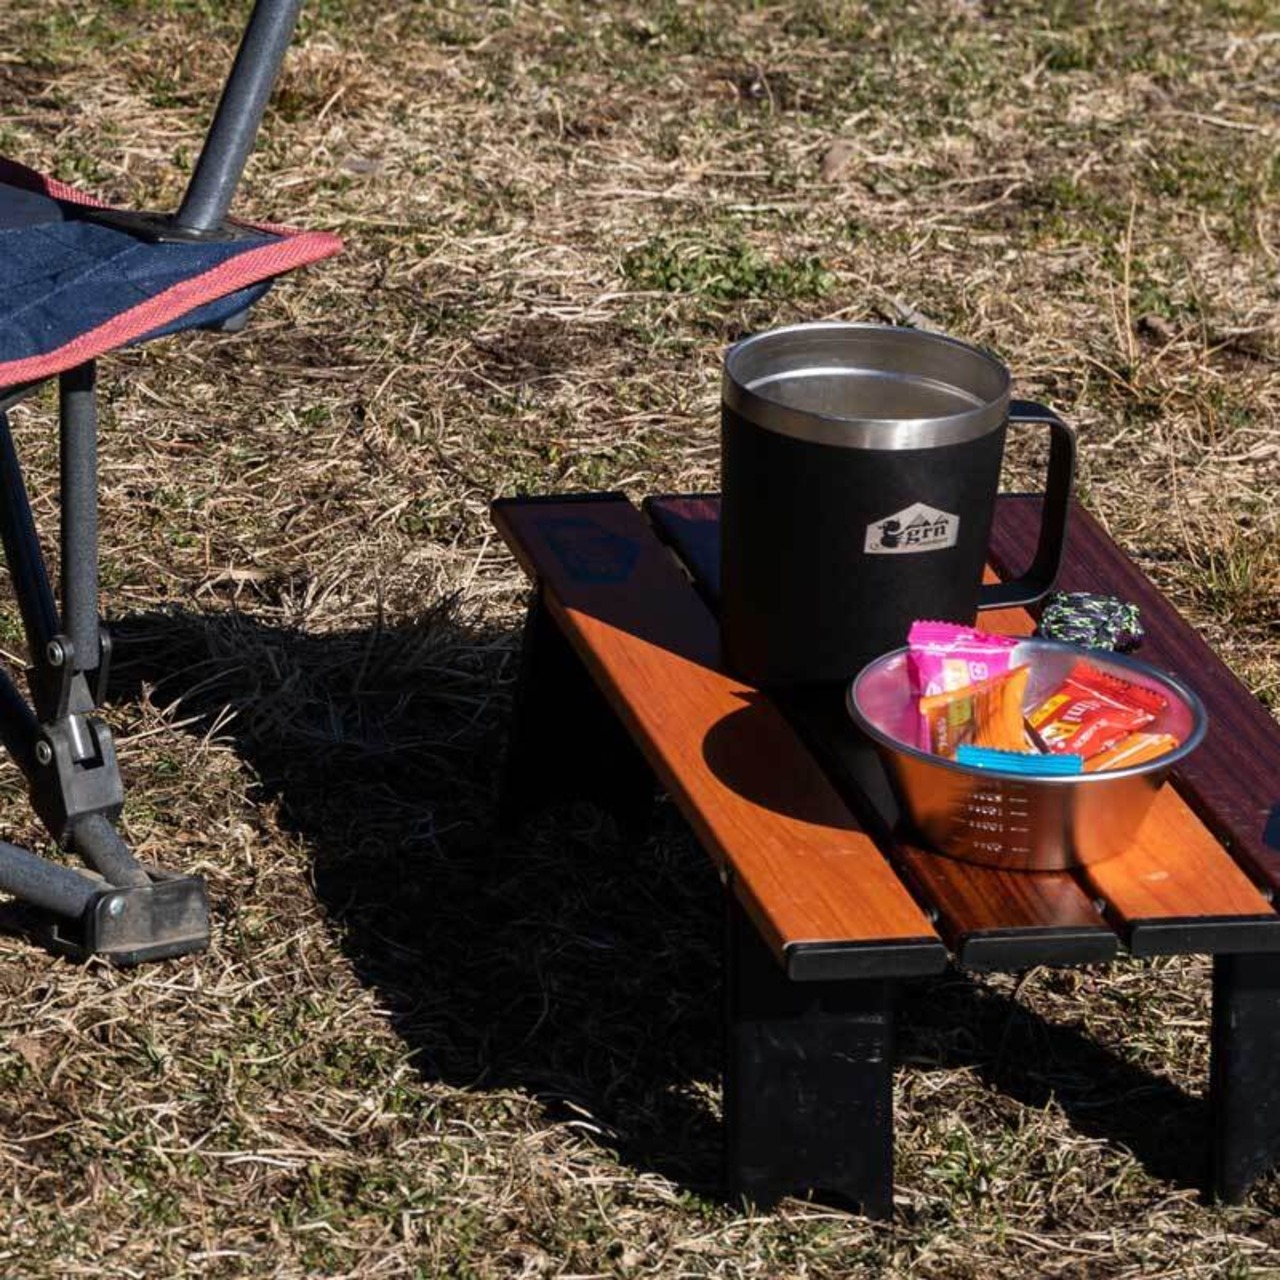 grn outdoor ( ジーアールエヌ アウトドア ) MONI-MINI TABLE (CRAZY) ミニテ ーブル ソロ キャンプ アウトドア グッズ 用品 折りたたみ コンパクト 軽量 go0466f